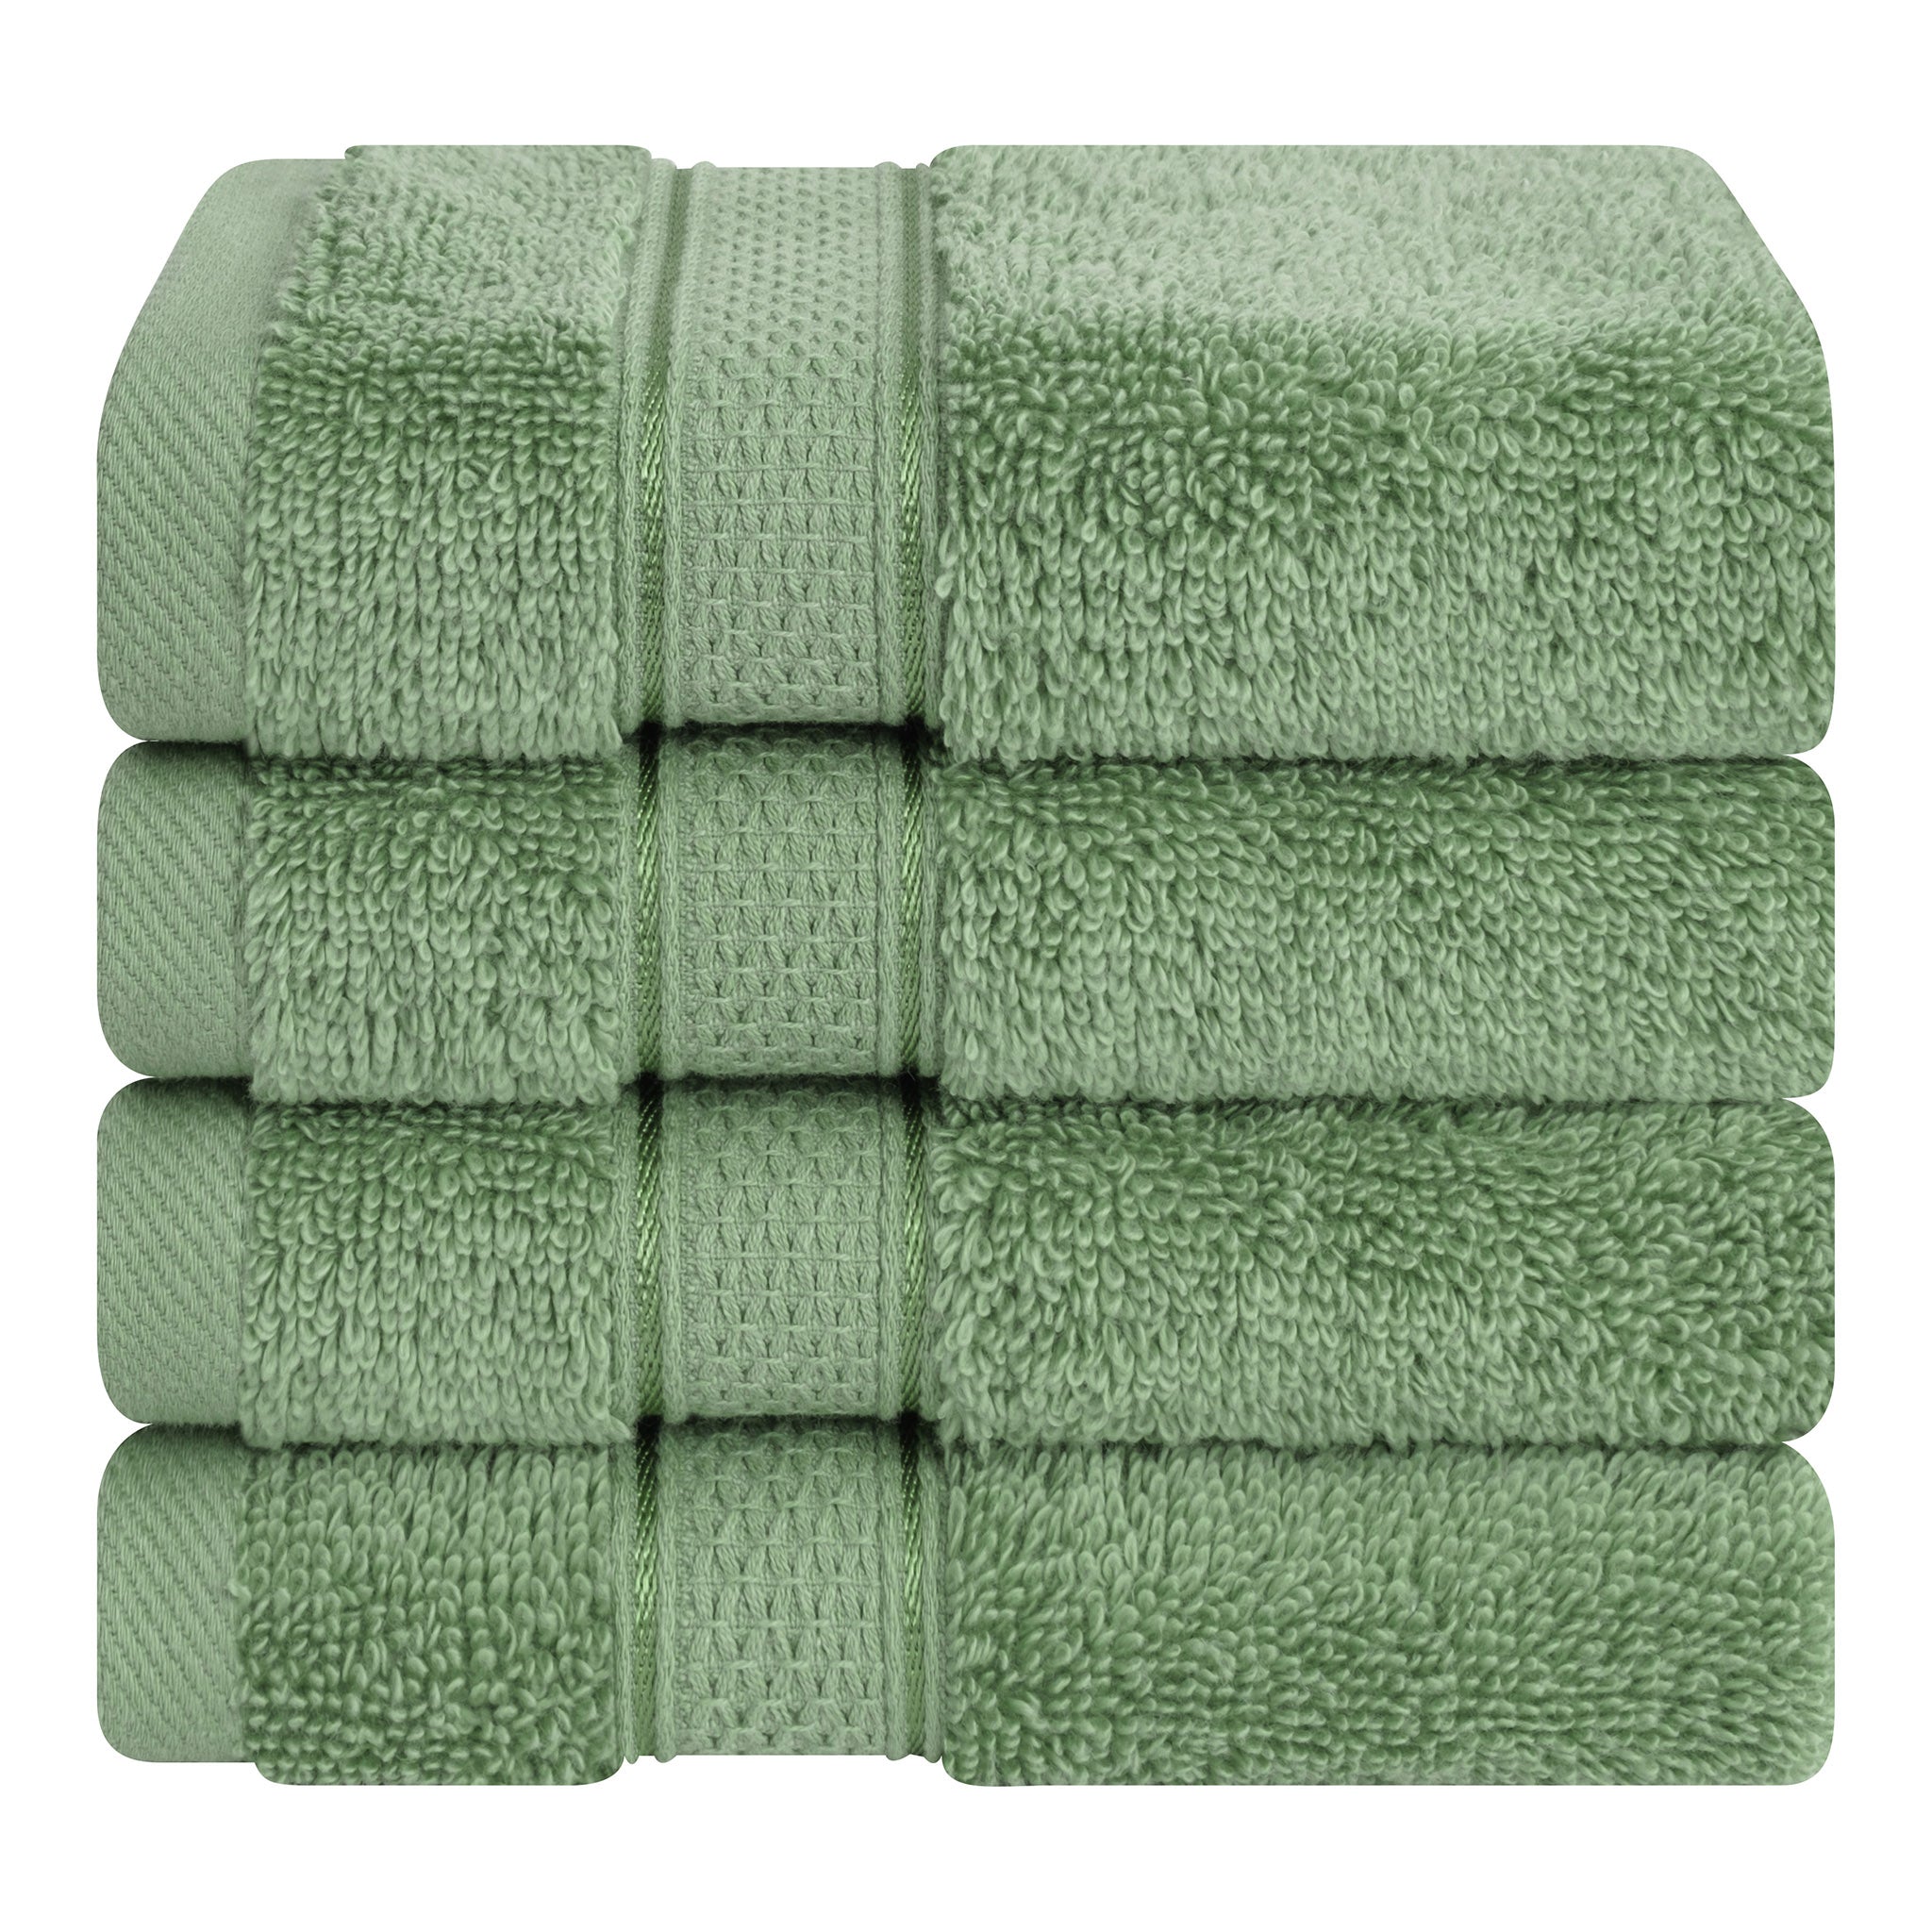 American Soft Linen Salem 100% Turkish Combed Cotton Luxury 4 Piece Washcloth Set -sage-green-1